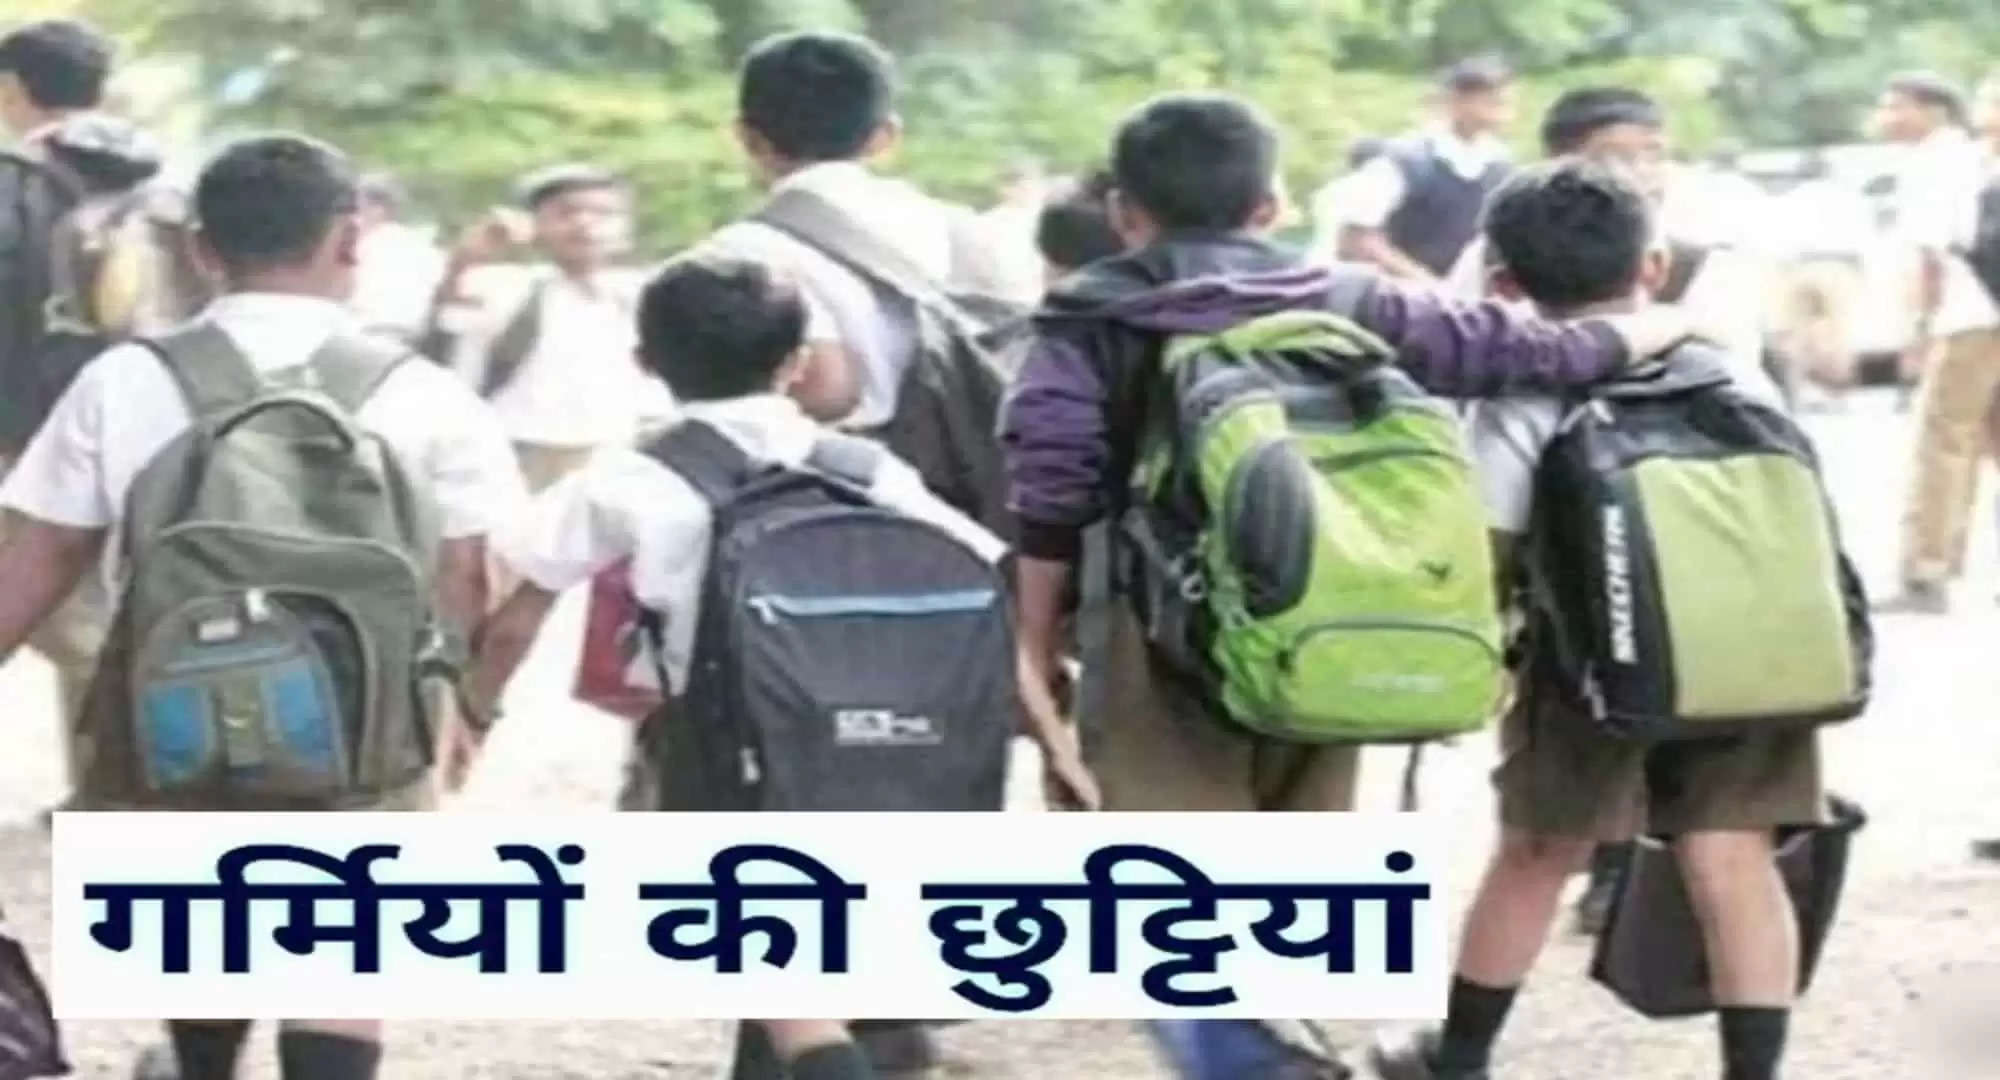 Haryana School Holidays: हरियाणा में 1 जून से 30 जून तक गर्मी की छुट्टियां, छात्रों को करना हो ये काम